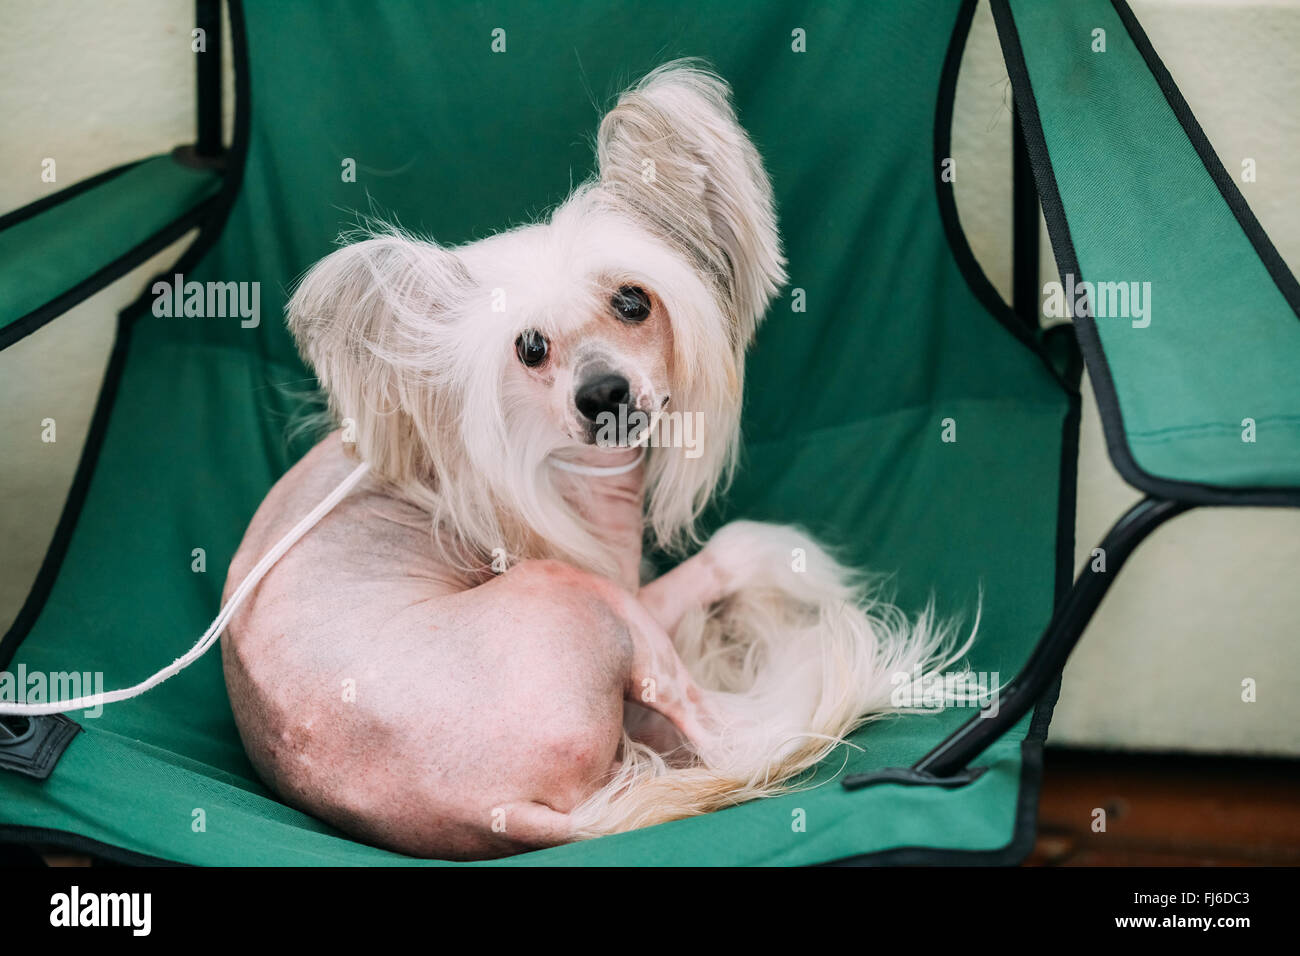 Perro crestado chino blanco joven sentada en una silla. Raza de Perro sin pelo. Piel clara. Foto de stock